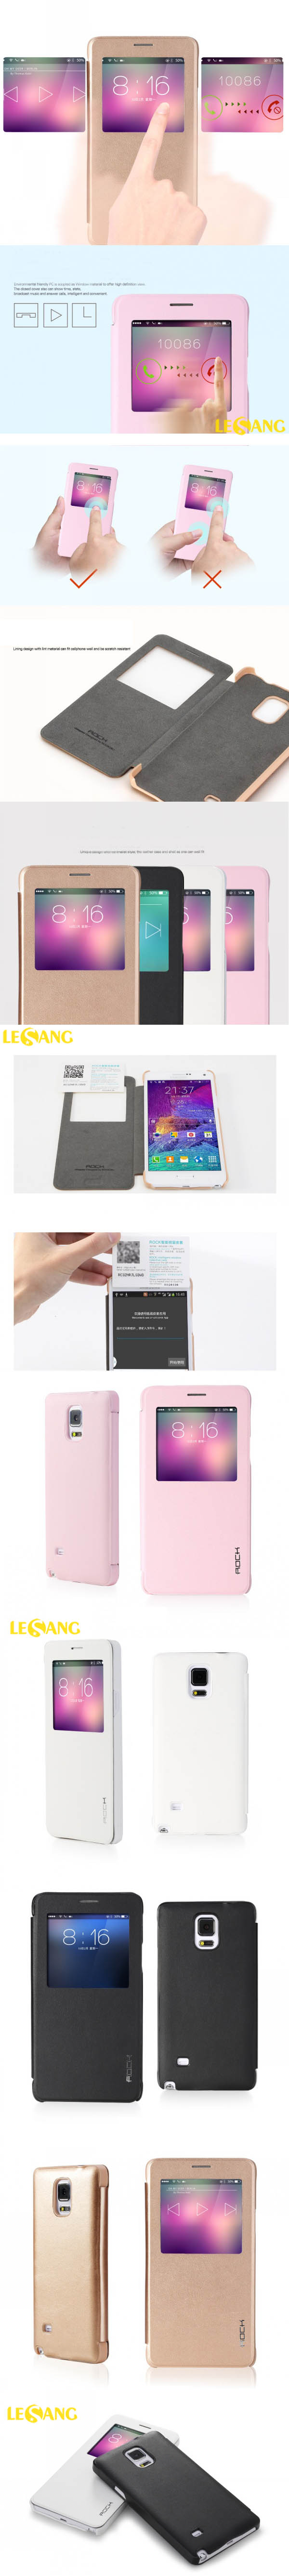 Bao da Galaxy Note 4 Rock Uni View 3